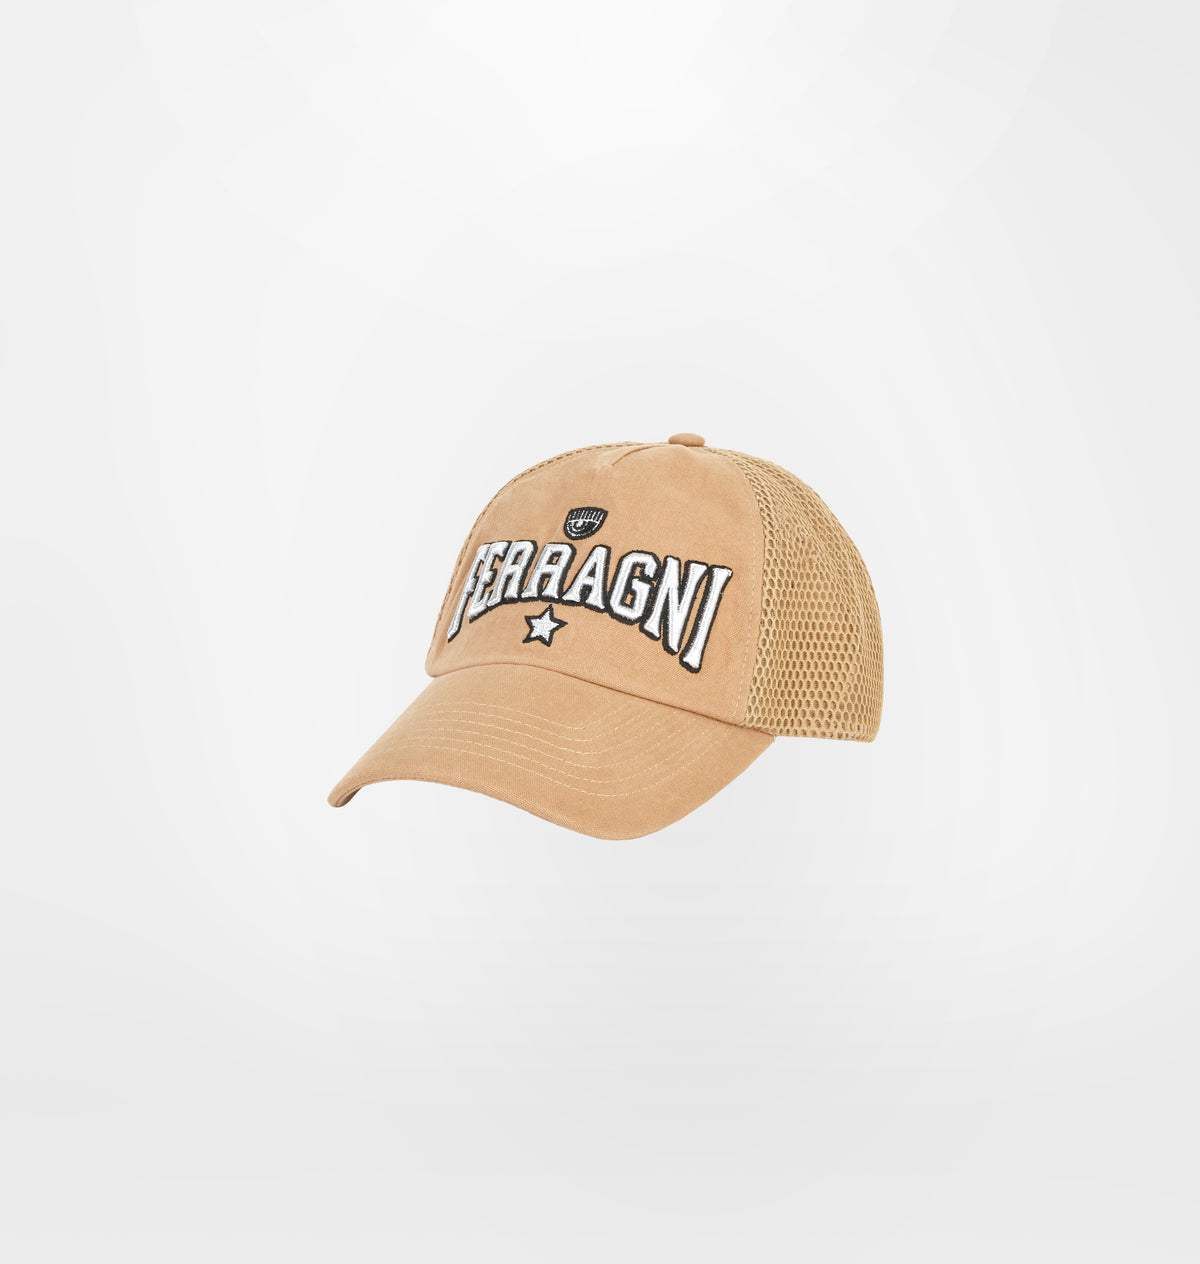 FERRAGNI STRETCH BASEBALL CAP